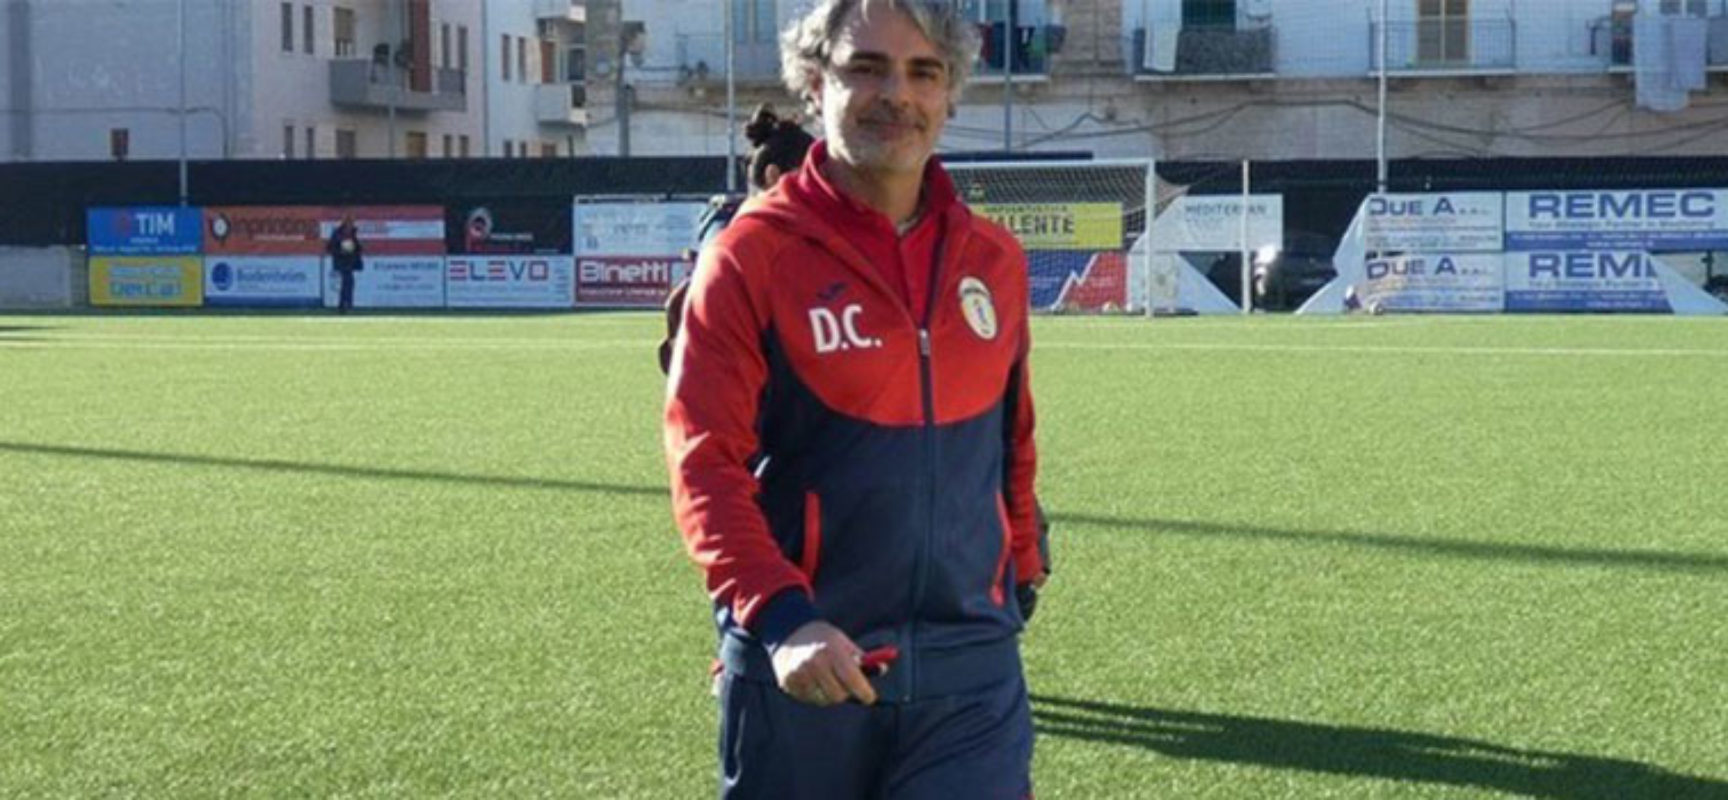 Termina il rapporto tra Don Uva Calcio ed il tecnico Domenico Capurso